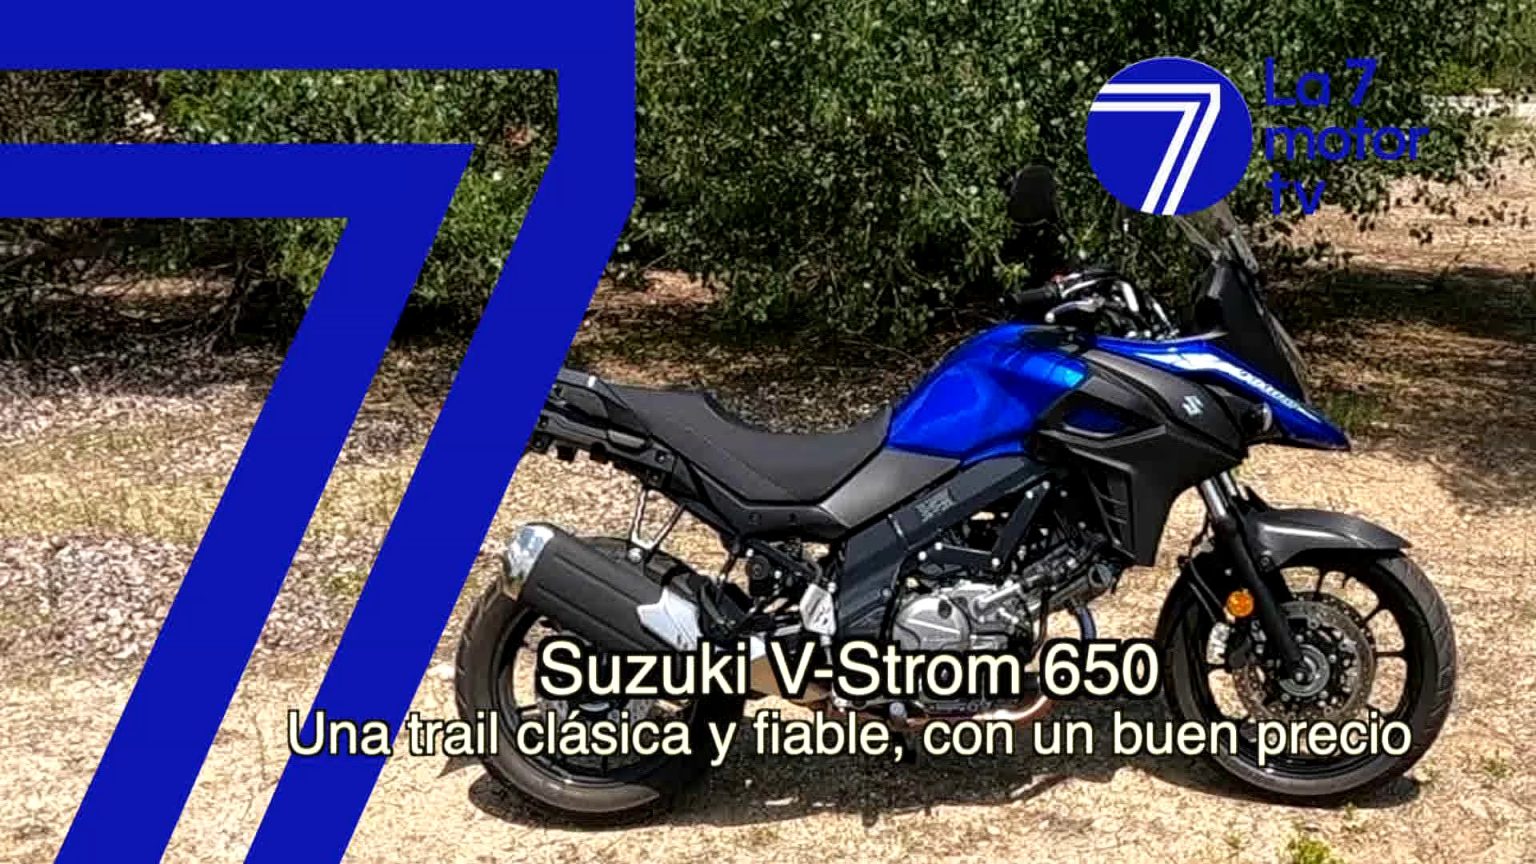 Suzuki V-Strom 650: una trail clásica y fiable, con un buen precio